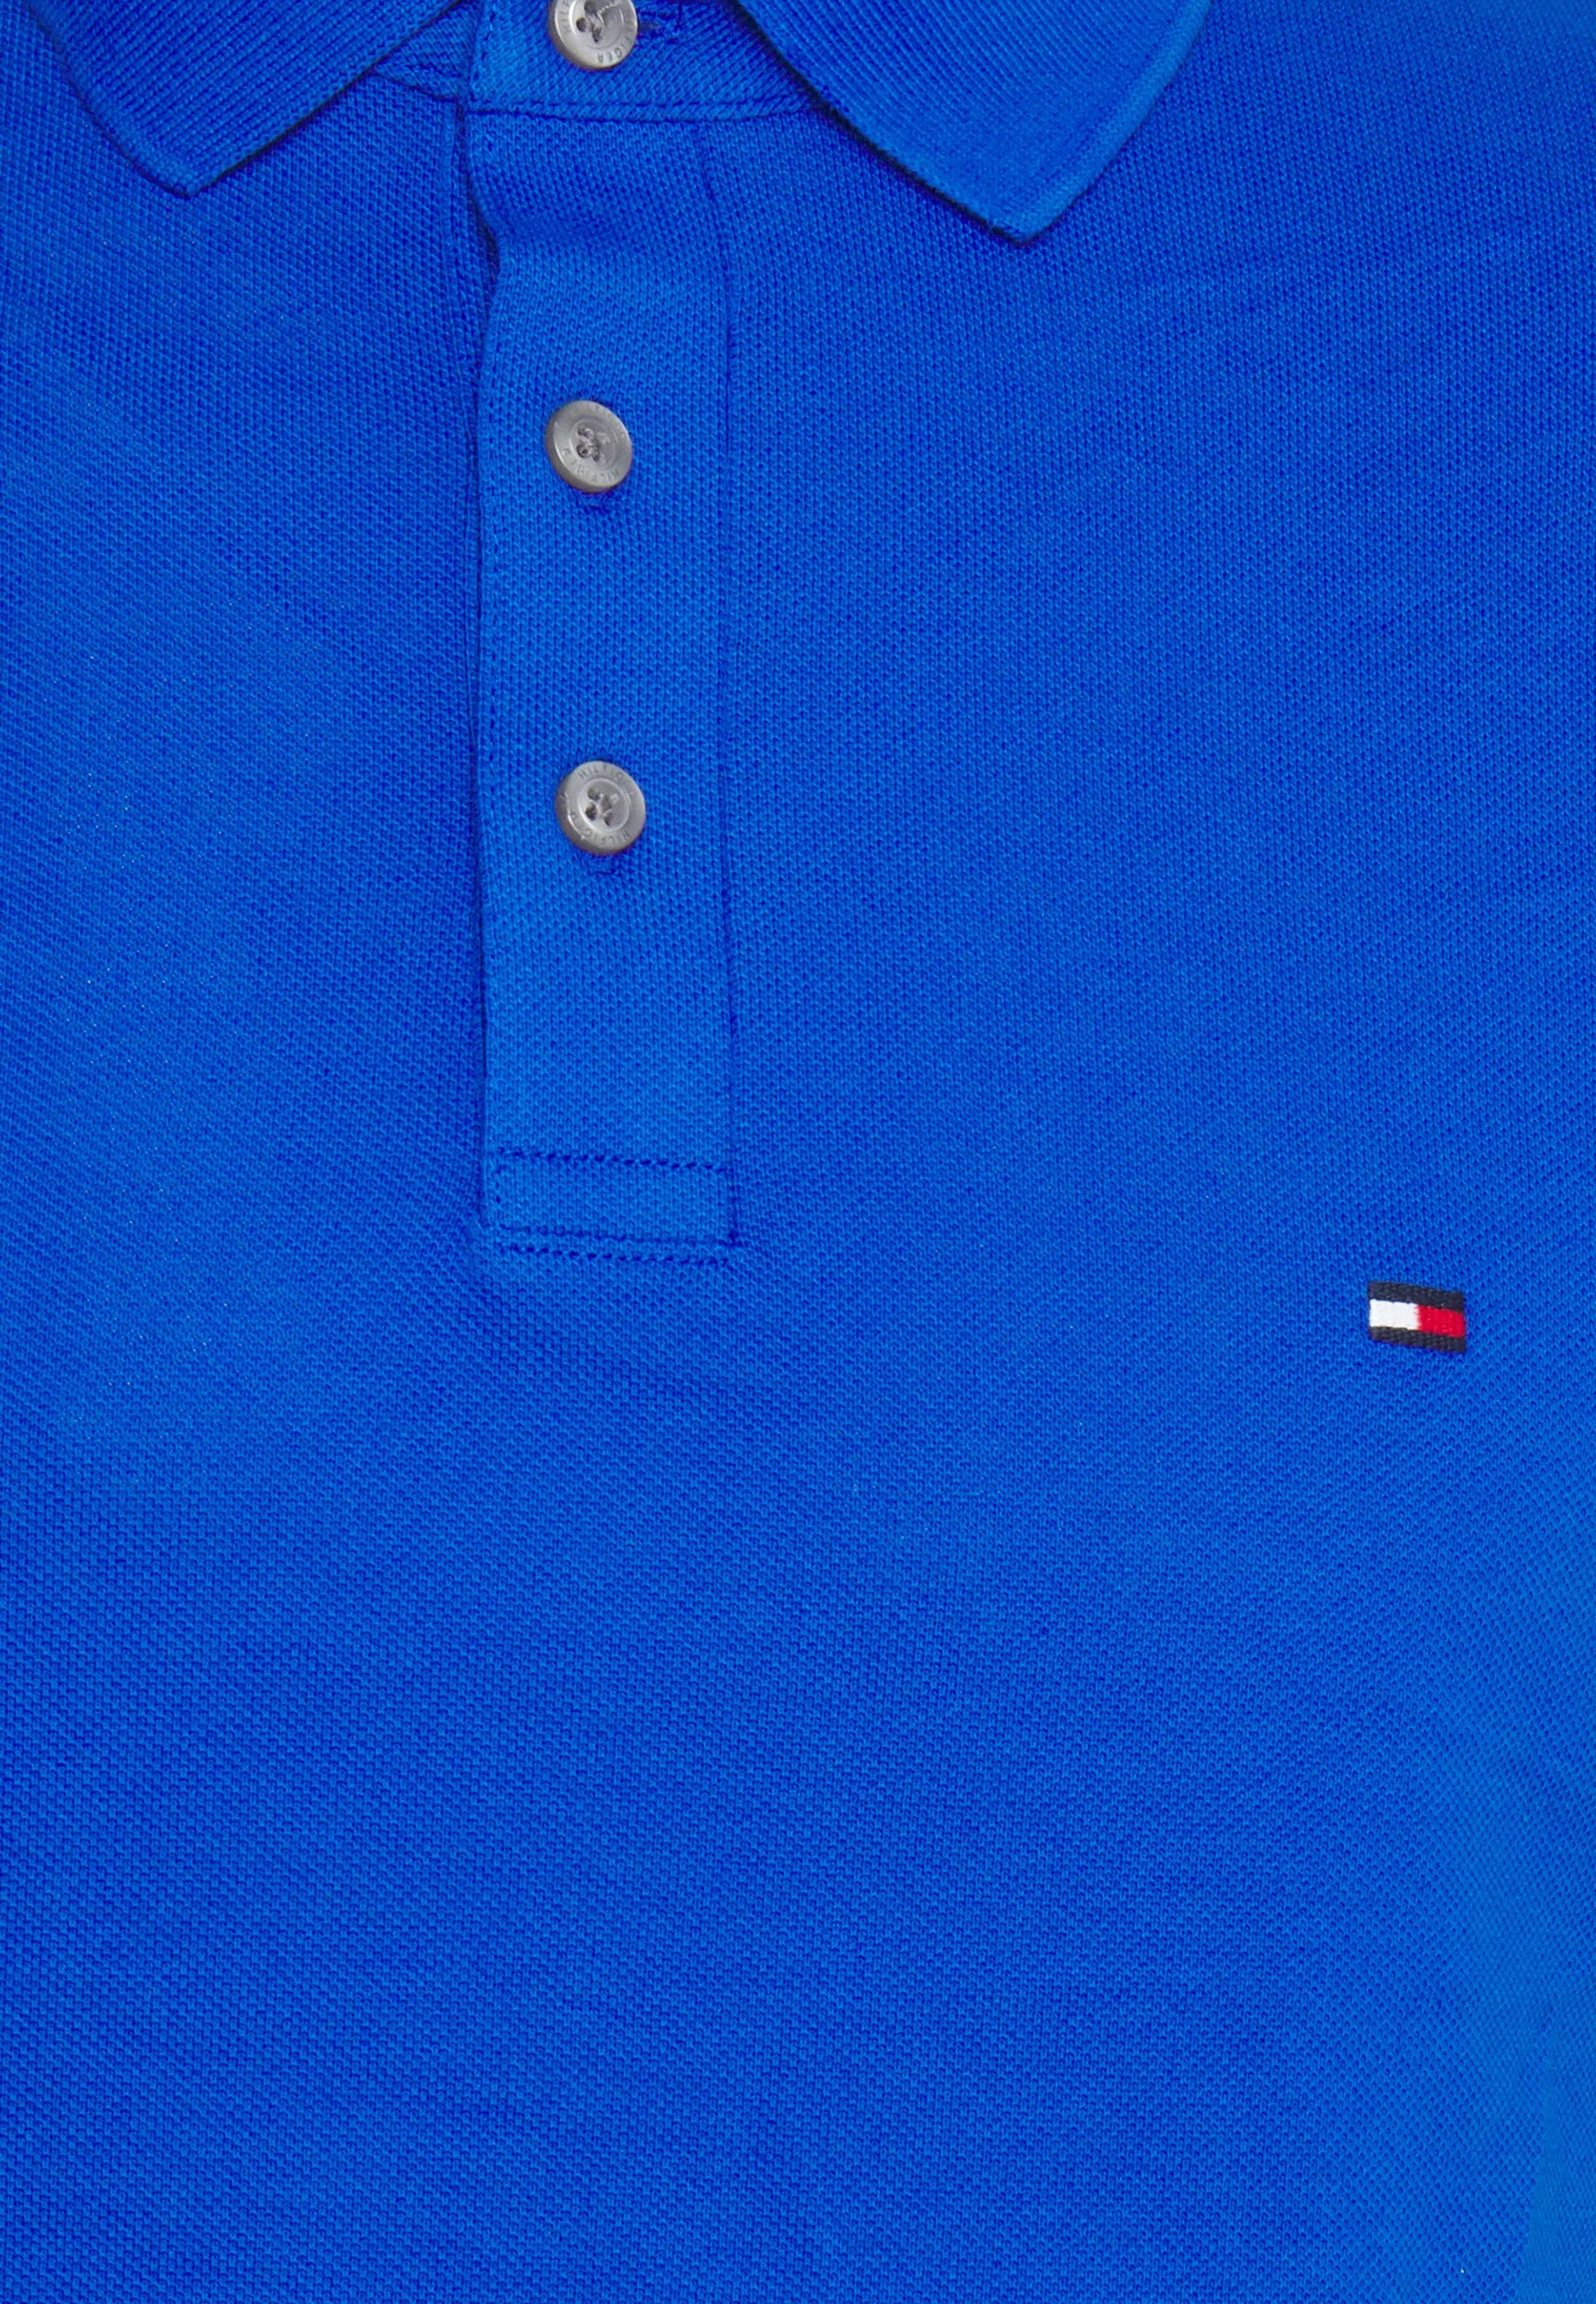 Polo Tommy Hilfiger ajusté bleu en coton bio pour homme I Georgespaul